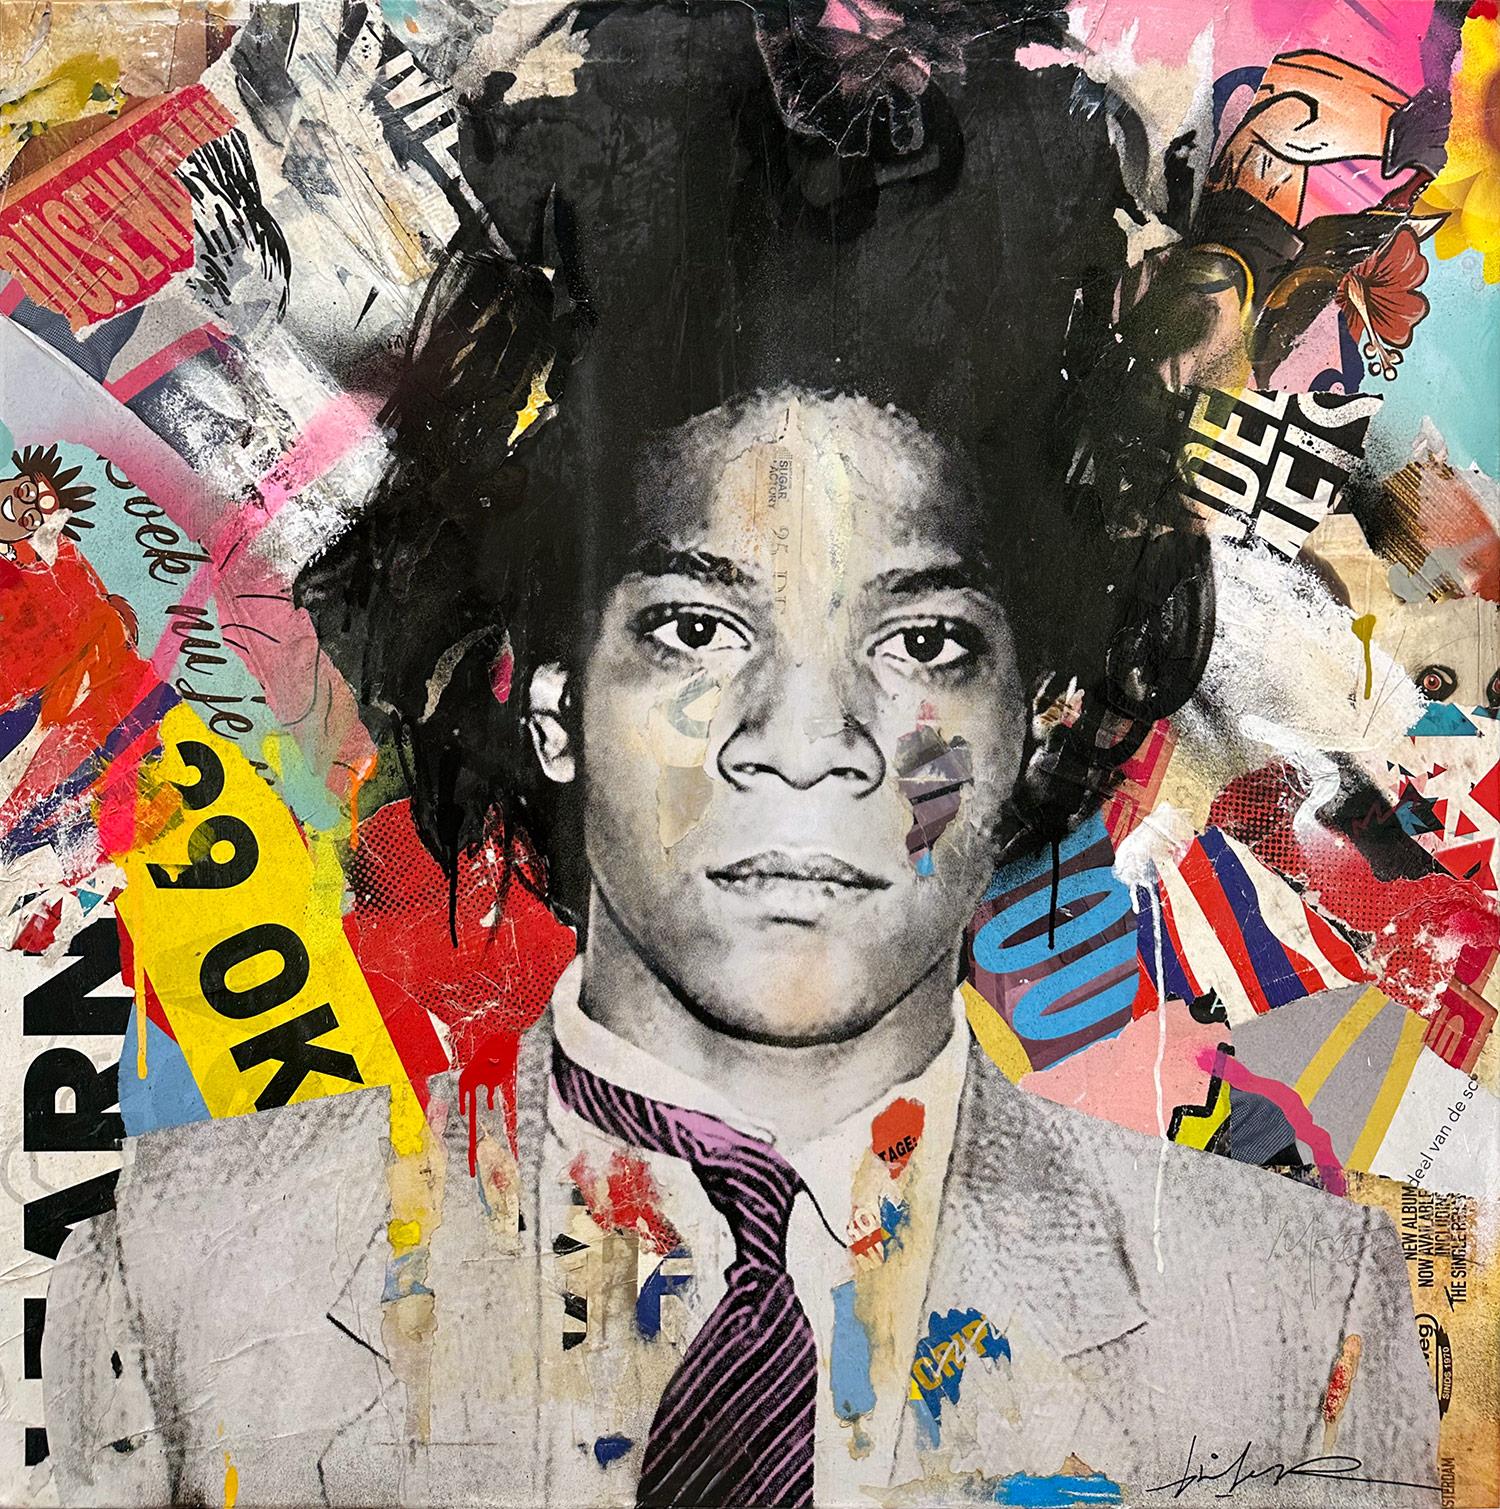 Gieler Portrait Painting – "Jean Michel" Basquiat Colorful Pop Art Portrait Mixed Media Painting on Canvas